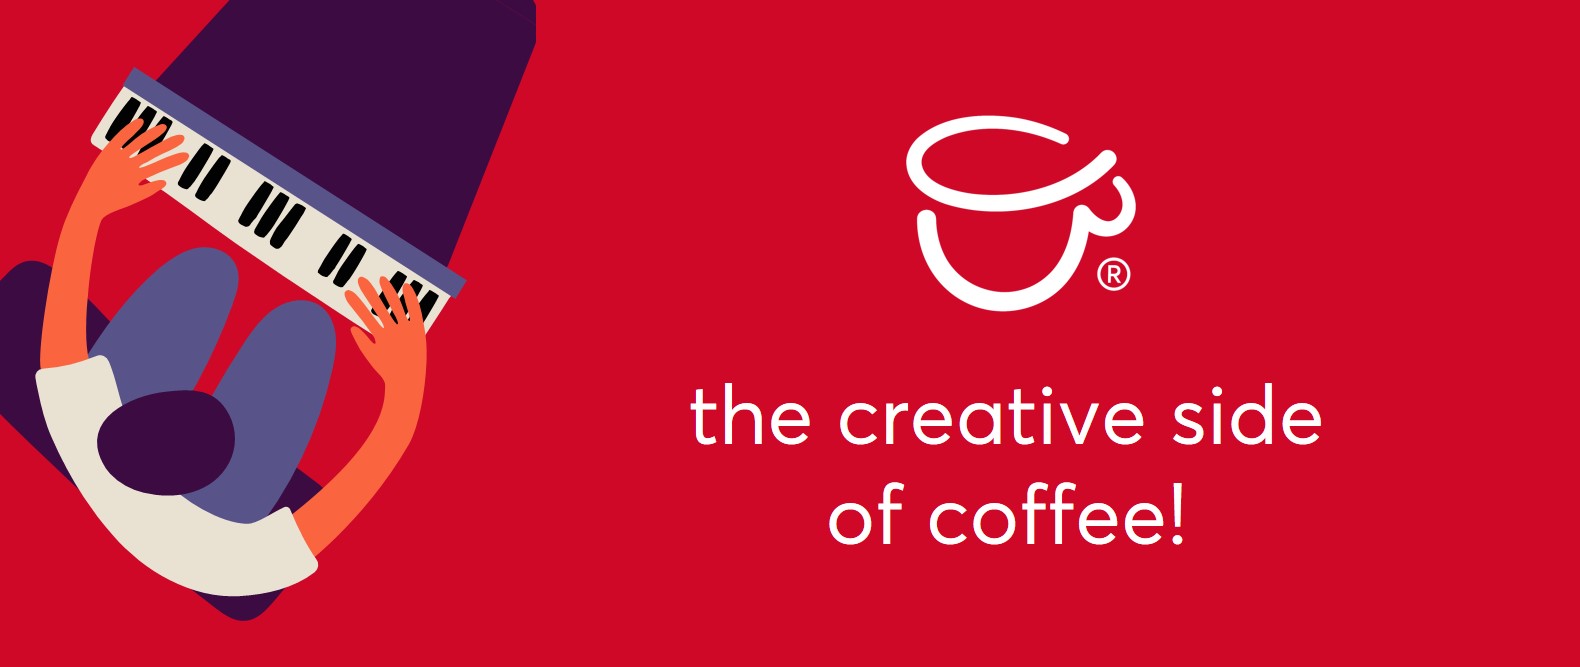 coffeeway - the creative side of coffee